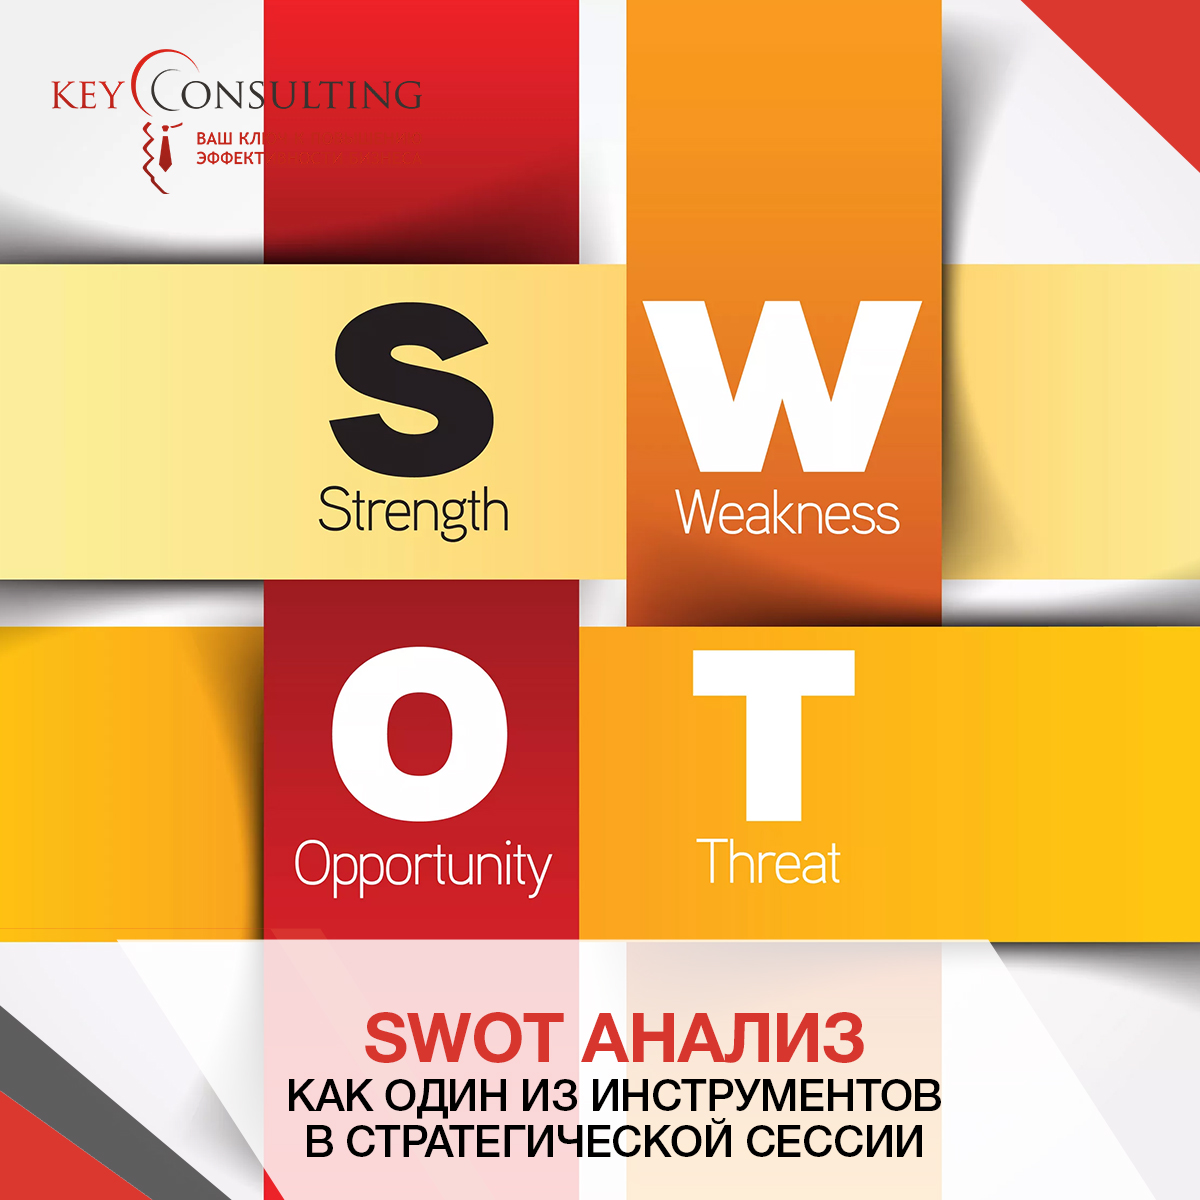  Отчет по практике по теме Проведение SWOT-анализа организации для выбора дальнейшей стратегии